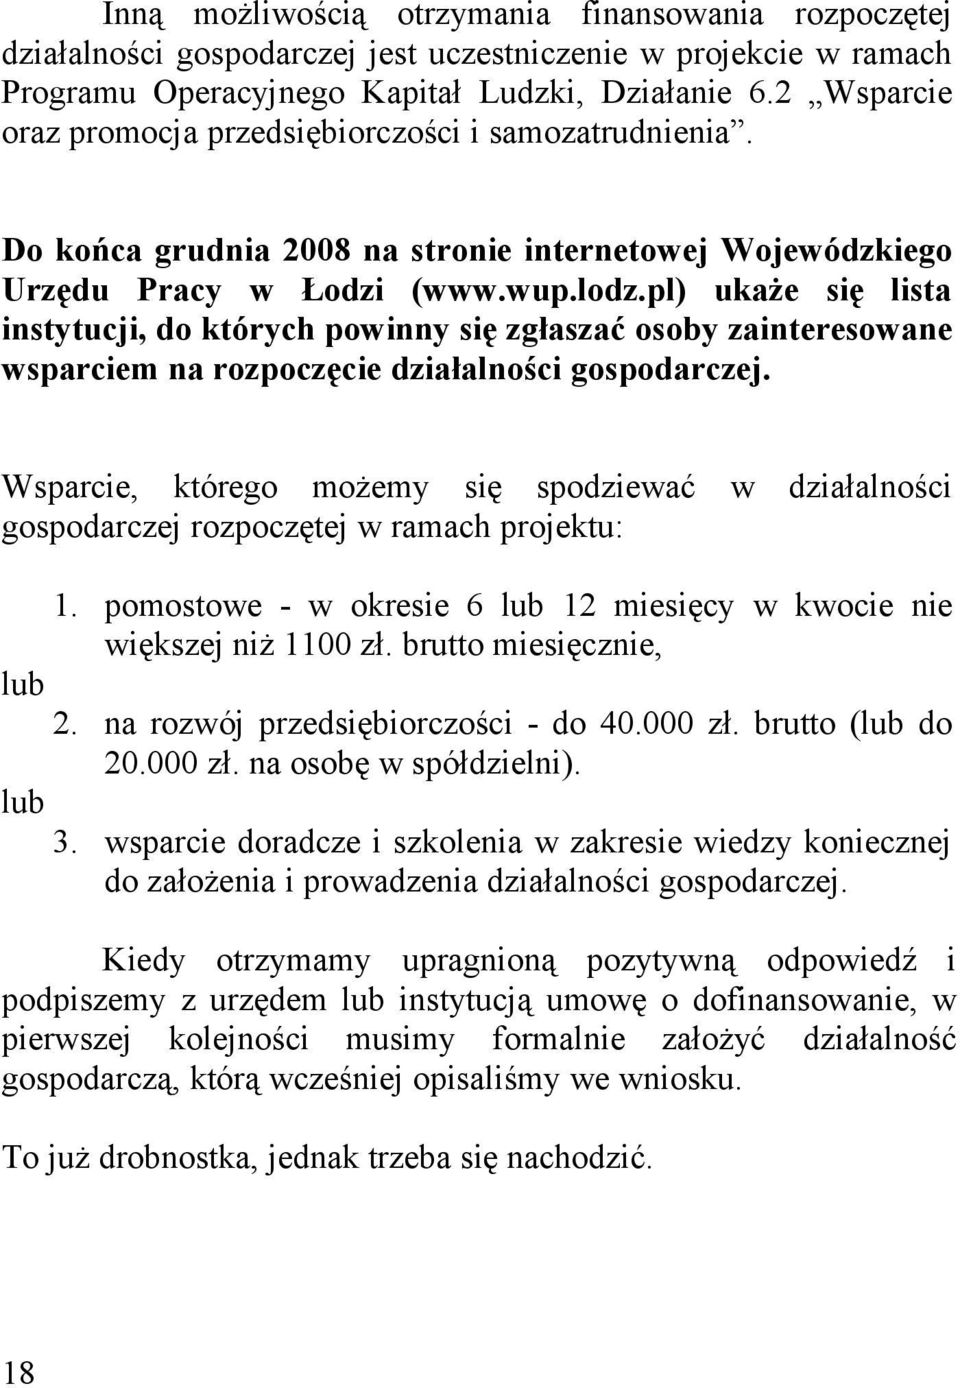 pl) ukaże się lista instytucji, do których powinny się zgłaszać osoby zainteresowane wsparciem na rozpoczęcie działalności gospodarczej.